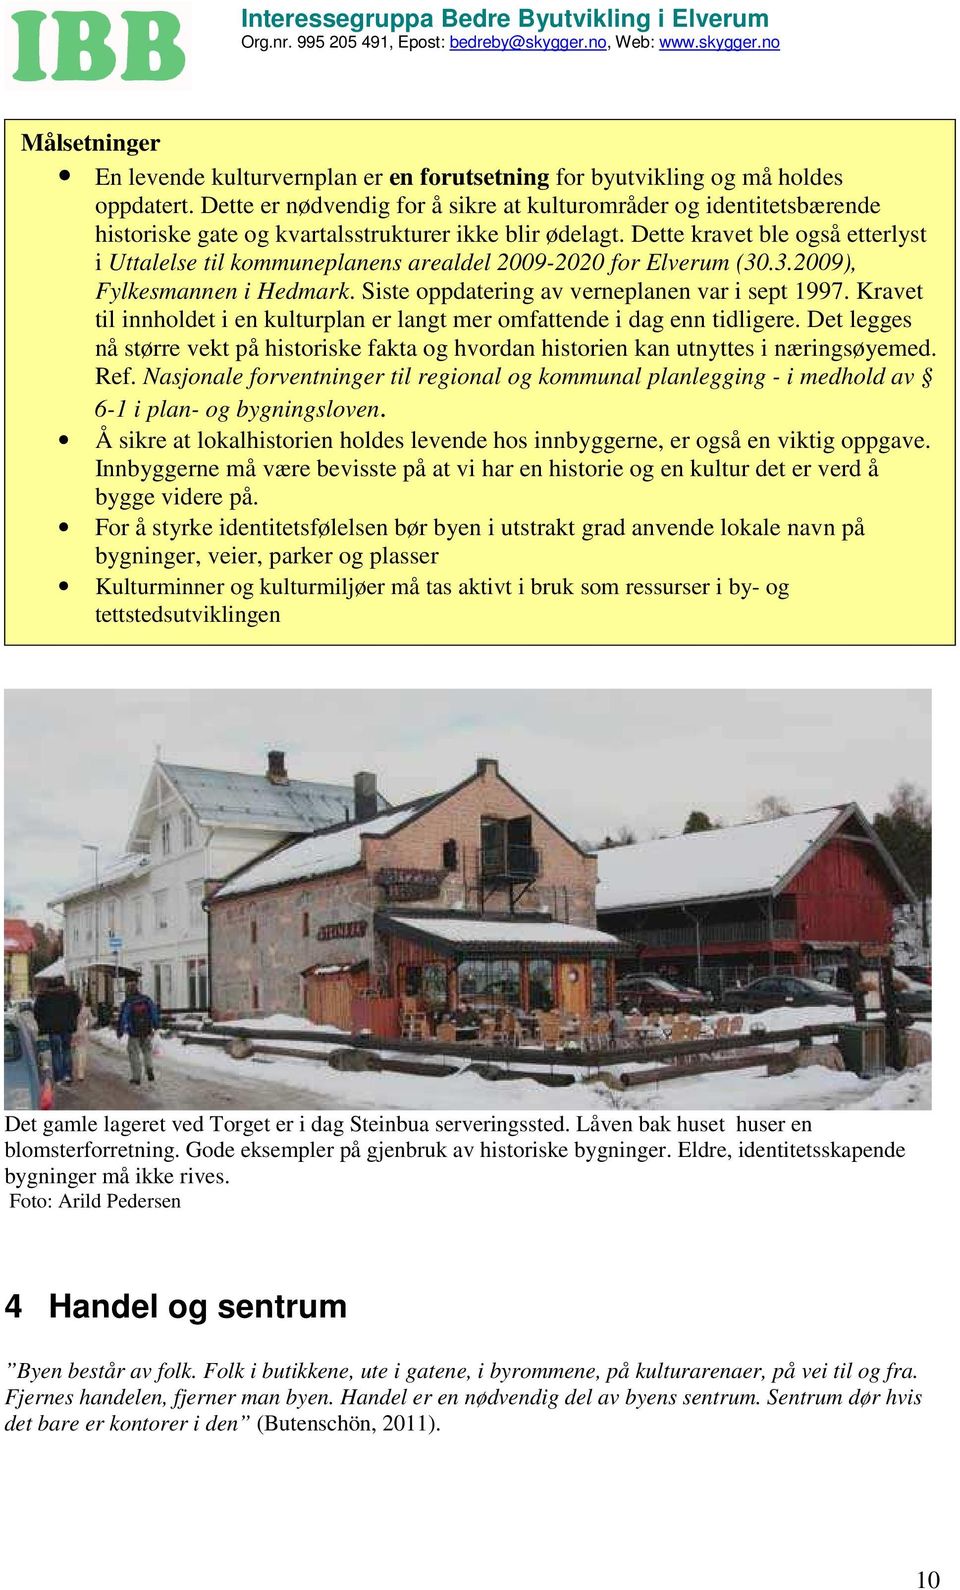 Dette kravet ble også etterlyst i Uttalelse til kommuneplanens arealdel 2009-2020 for Elverum (30.3.2009), Fylkesmannen i Hedmark. Siste oppdatering av verneplanen var i sept 1997.